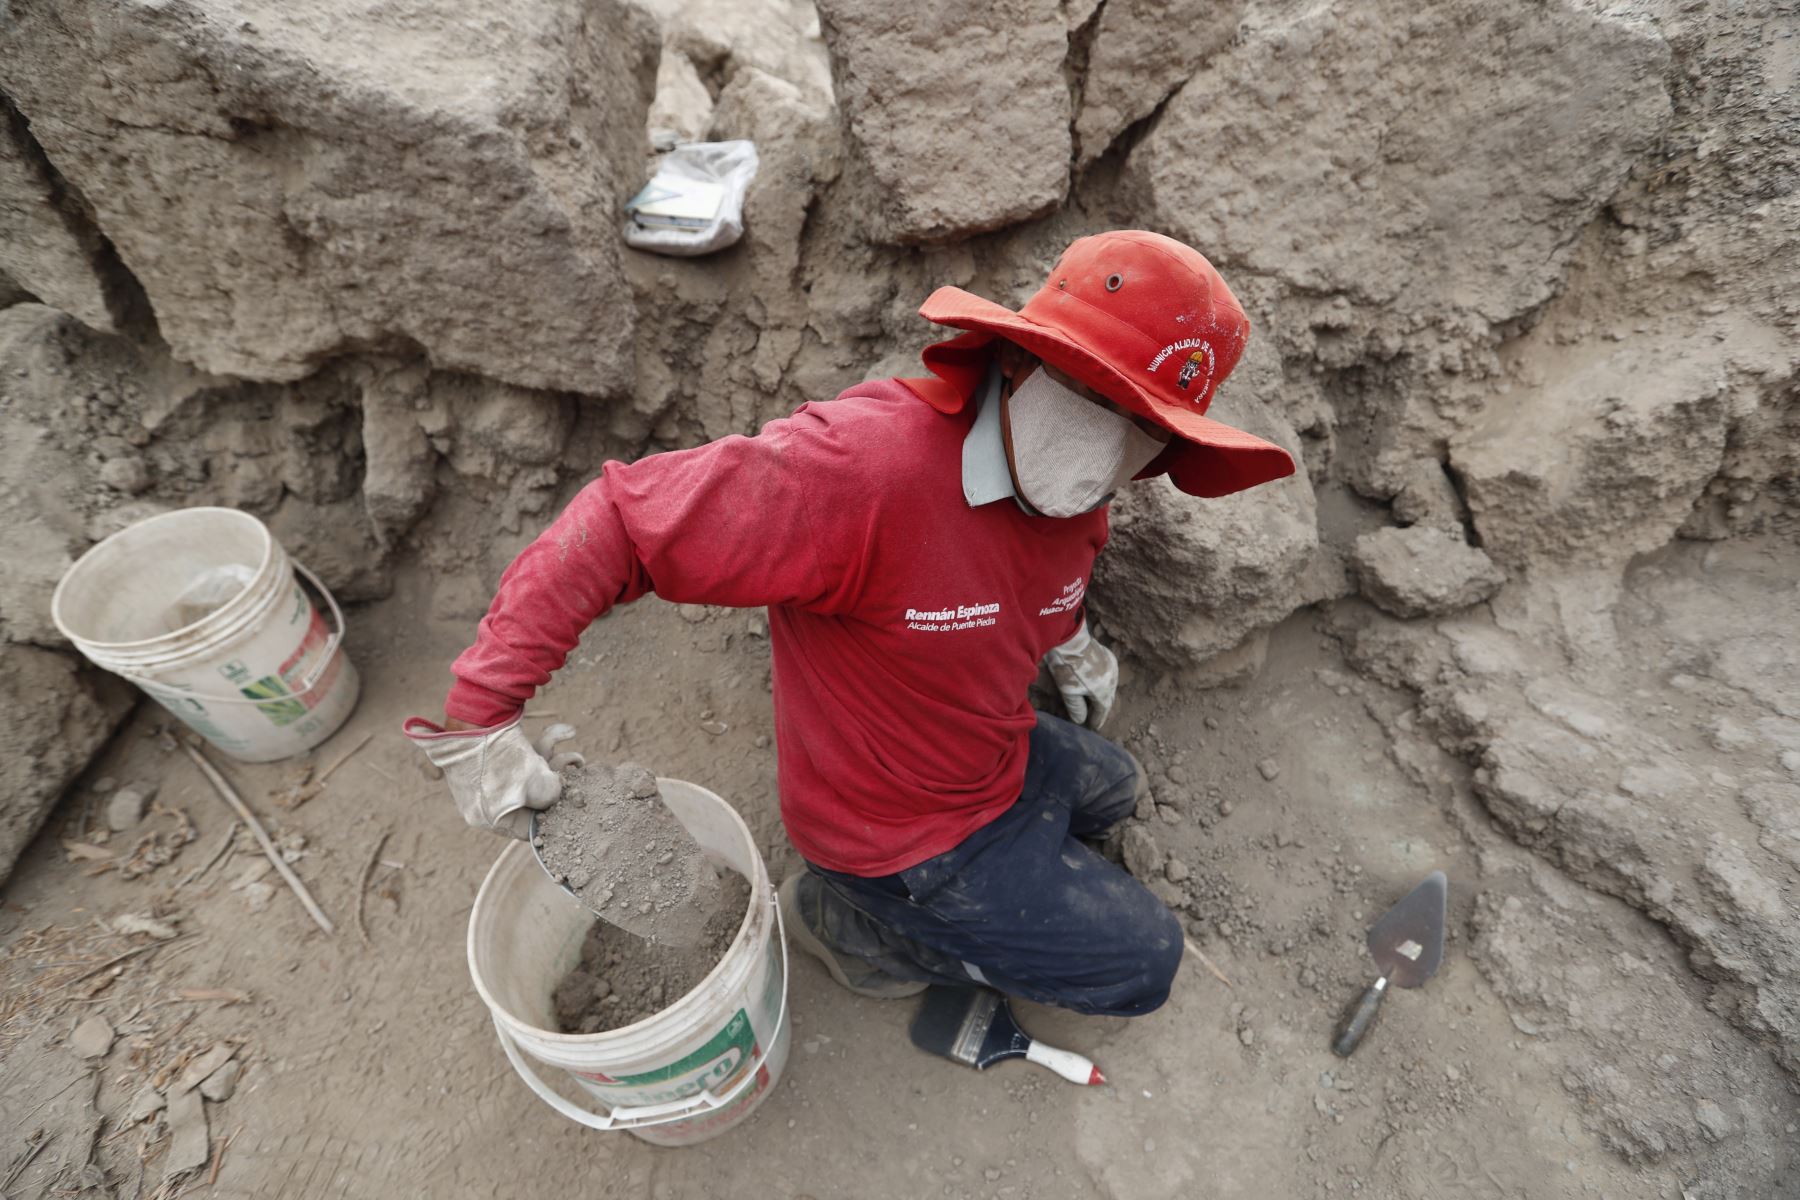 Los trabajos de excavación, estudios y conservación en el sitio arqueológico Tambo Inga están a cargo de la Municipalidad de Puente Piedra, con una inversión 4 millones 200 mil soles hasta la fecha. Foto: ANDINA/Daniel Bracamonte